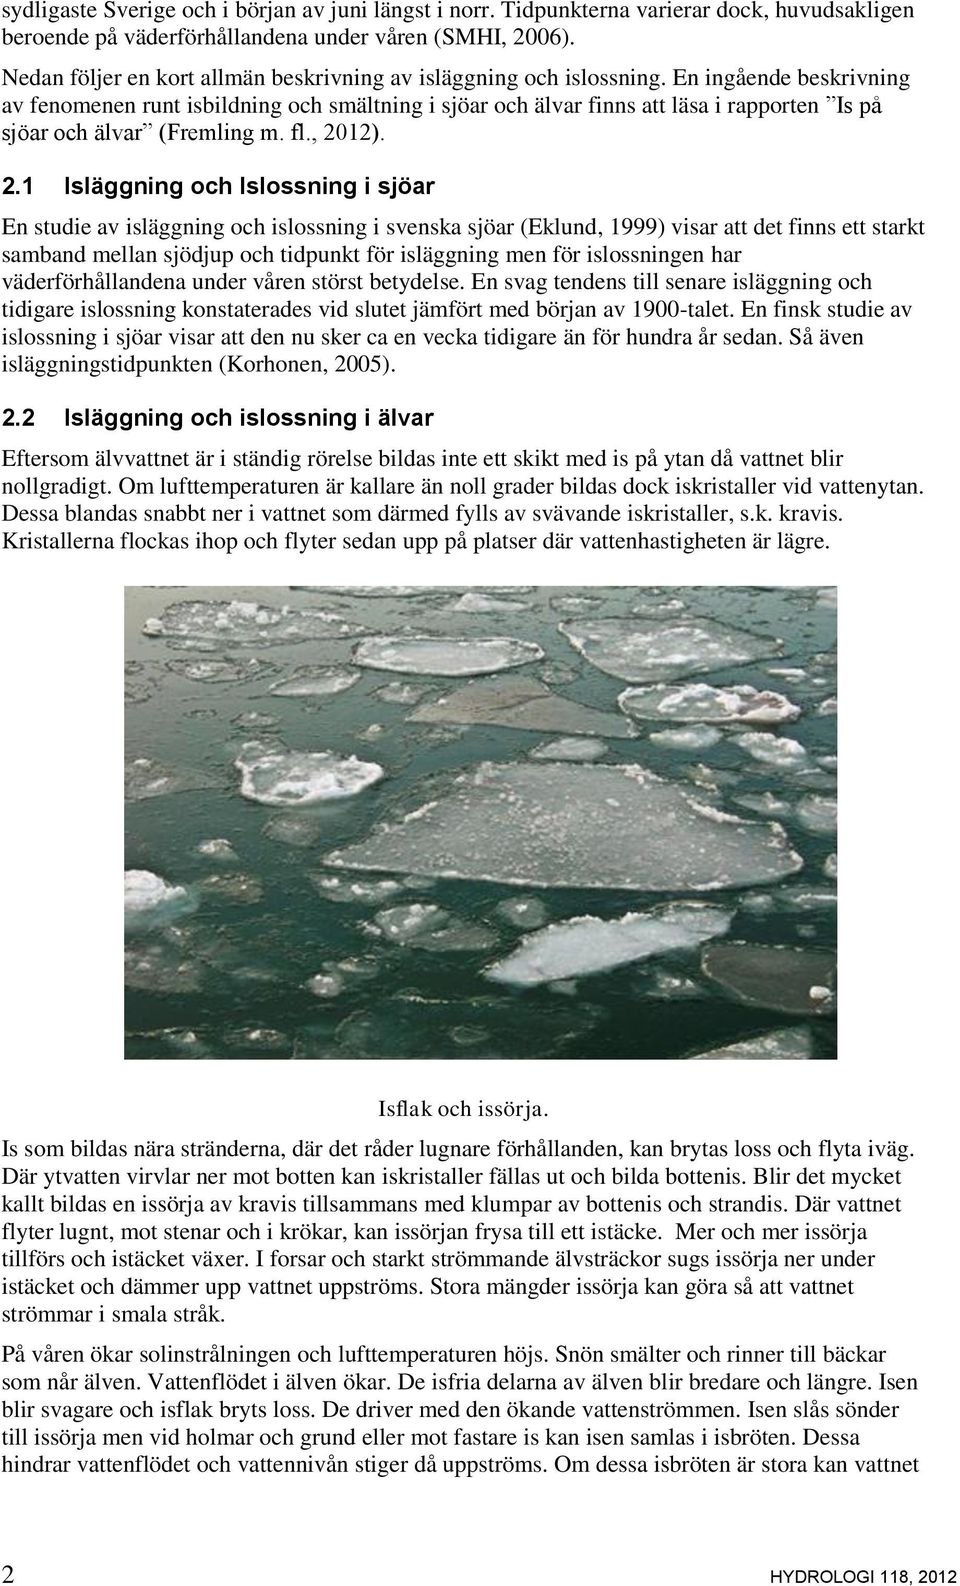 En ingående beskrivning av fenomenen runt isbildning och smältning i sjöar och älvar finns att läsa i rapporten Is på sjöar och älvar (Fremling m. fl., 20